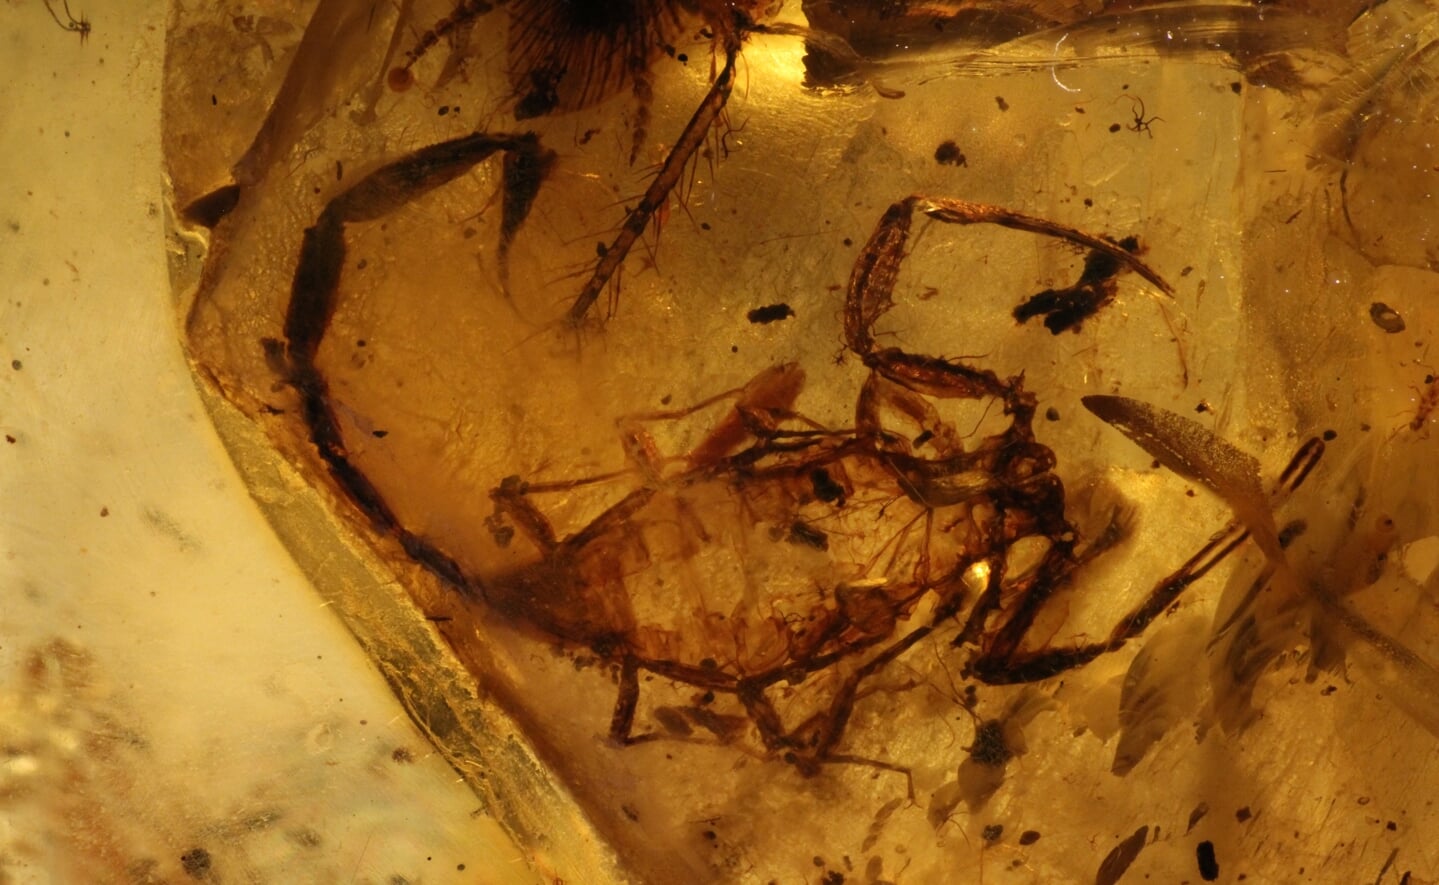 Fossiele resten van een schorpioen, geconserveerd in barnsteen. Deze Cretaceousbuthus fraaijeorum, vernoemd naar de Boxtelse familie Fraaije, wordt voor het eerst tentoongesteld. 